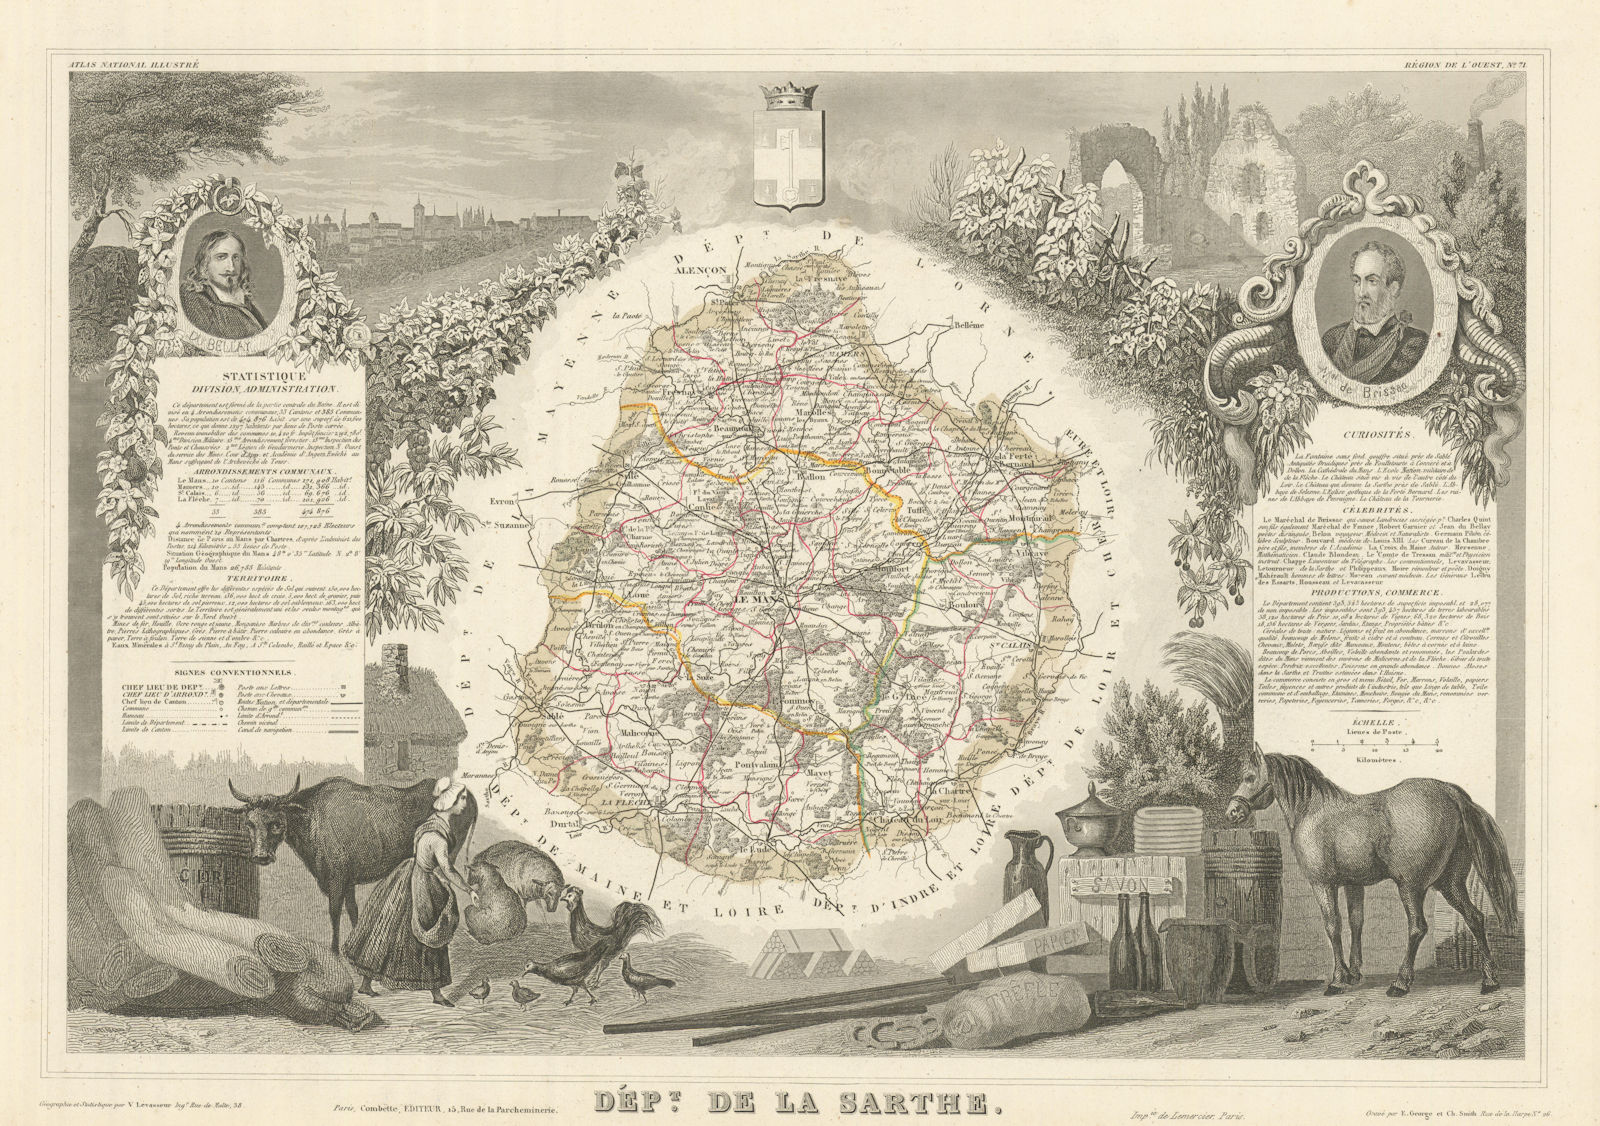 Associate Product Département de la SARTHE. Decorative antique map/carte by Victor LEVASSEUR 1856